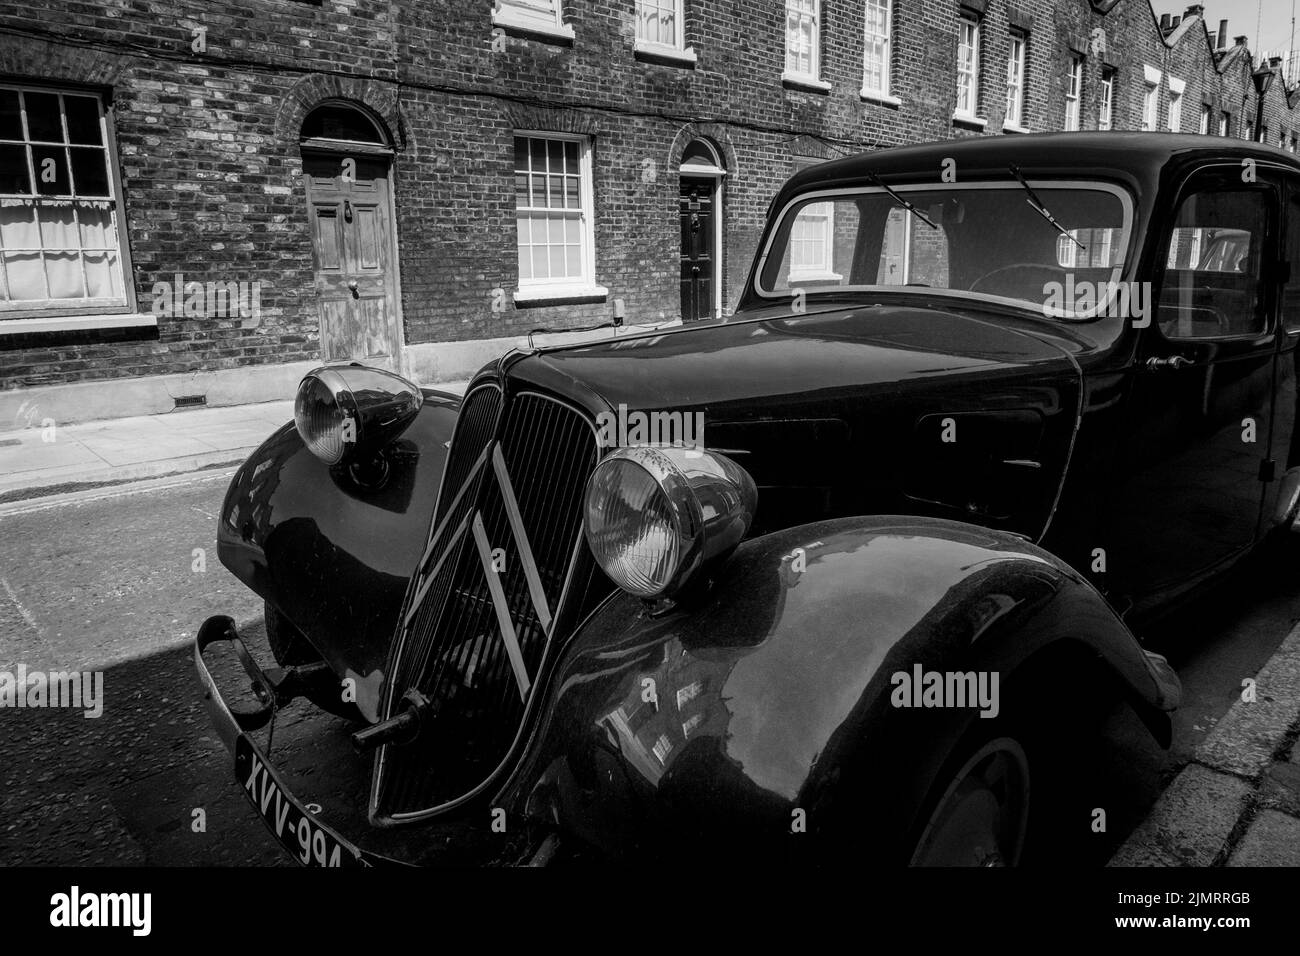 Photographie urbaine en noir et blanc à Londres : voiture Citroën d'époque garée dans la rue de Londres. ROYAUME-UNI Banque D'Images